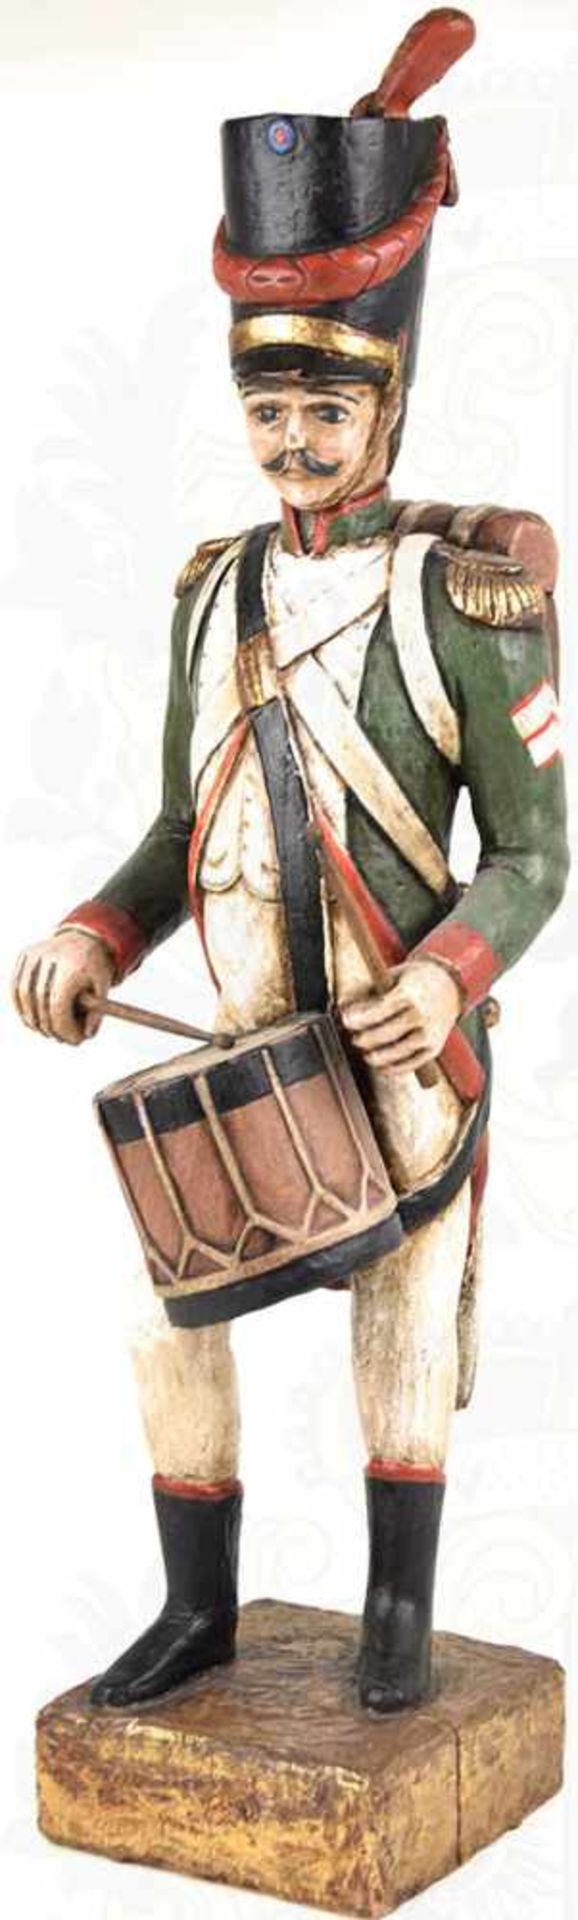 TROMMLER-FIGUR, Holz, farb. bemalt, Darstellung a. d. Zeit d. Napoleonischen Kriege, m. Tschako, - Bild 2 aus 3